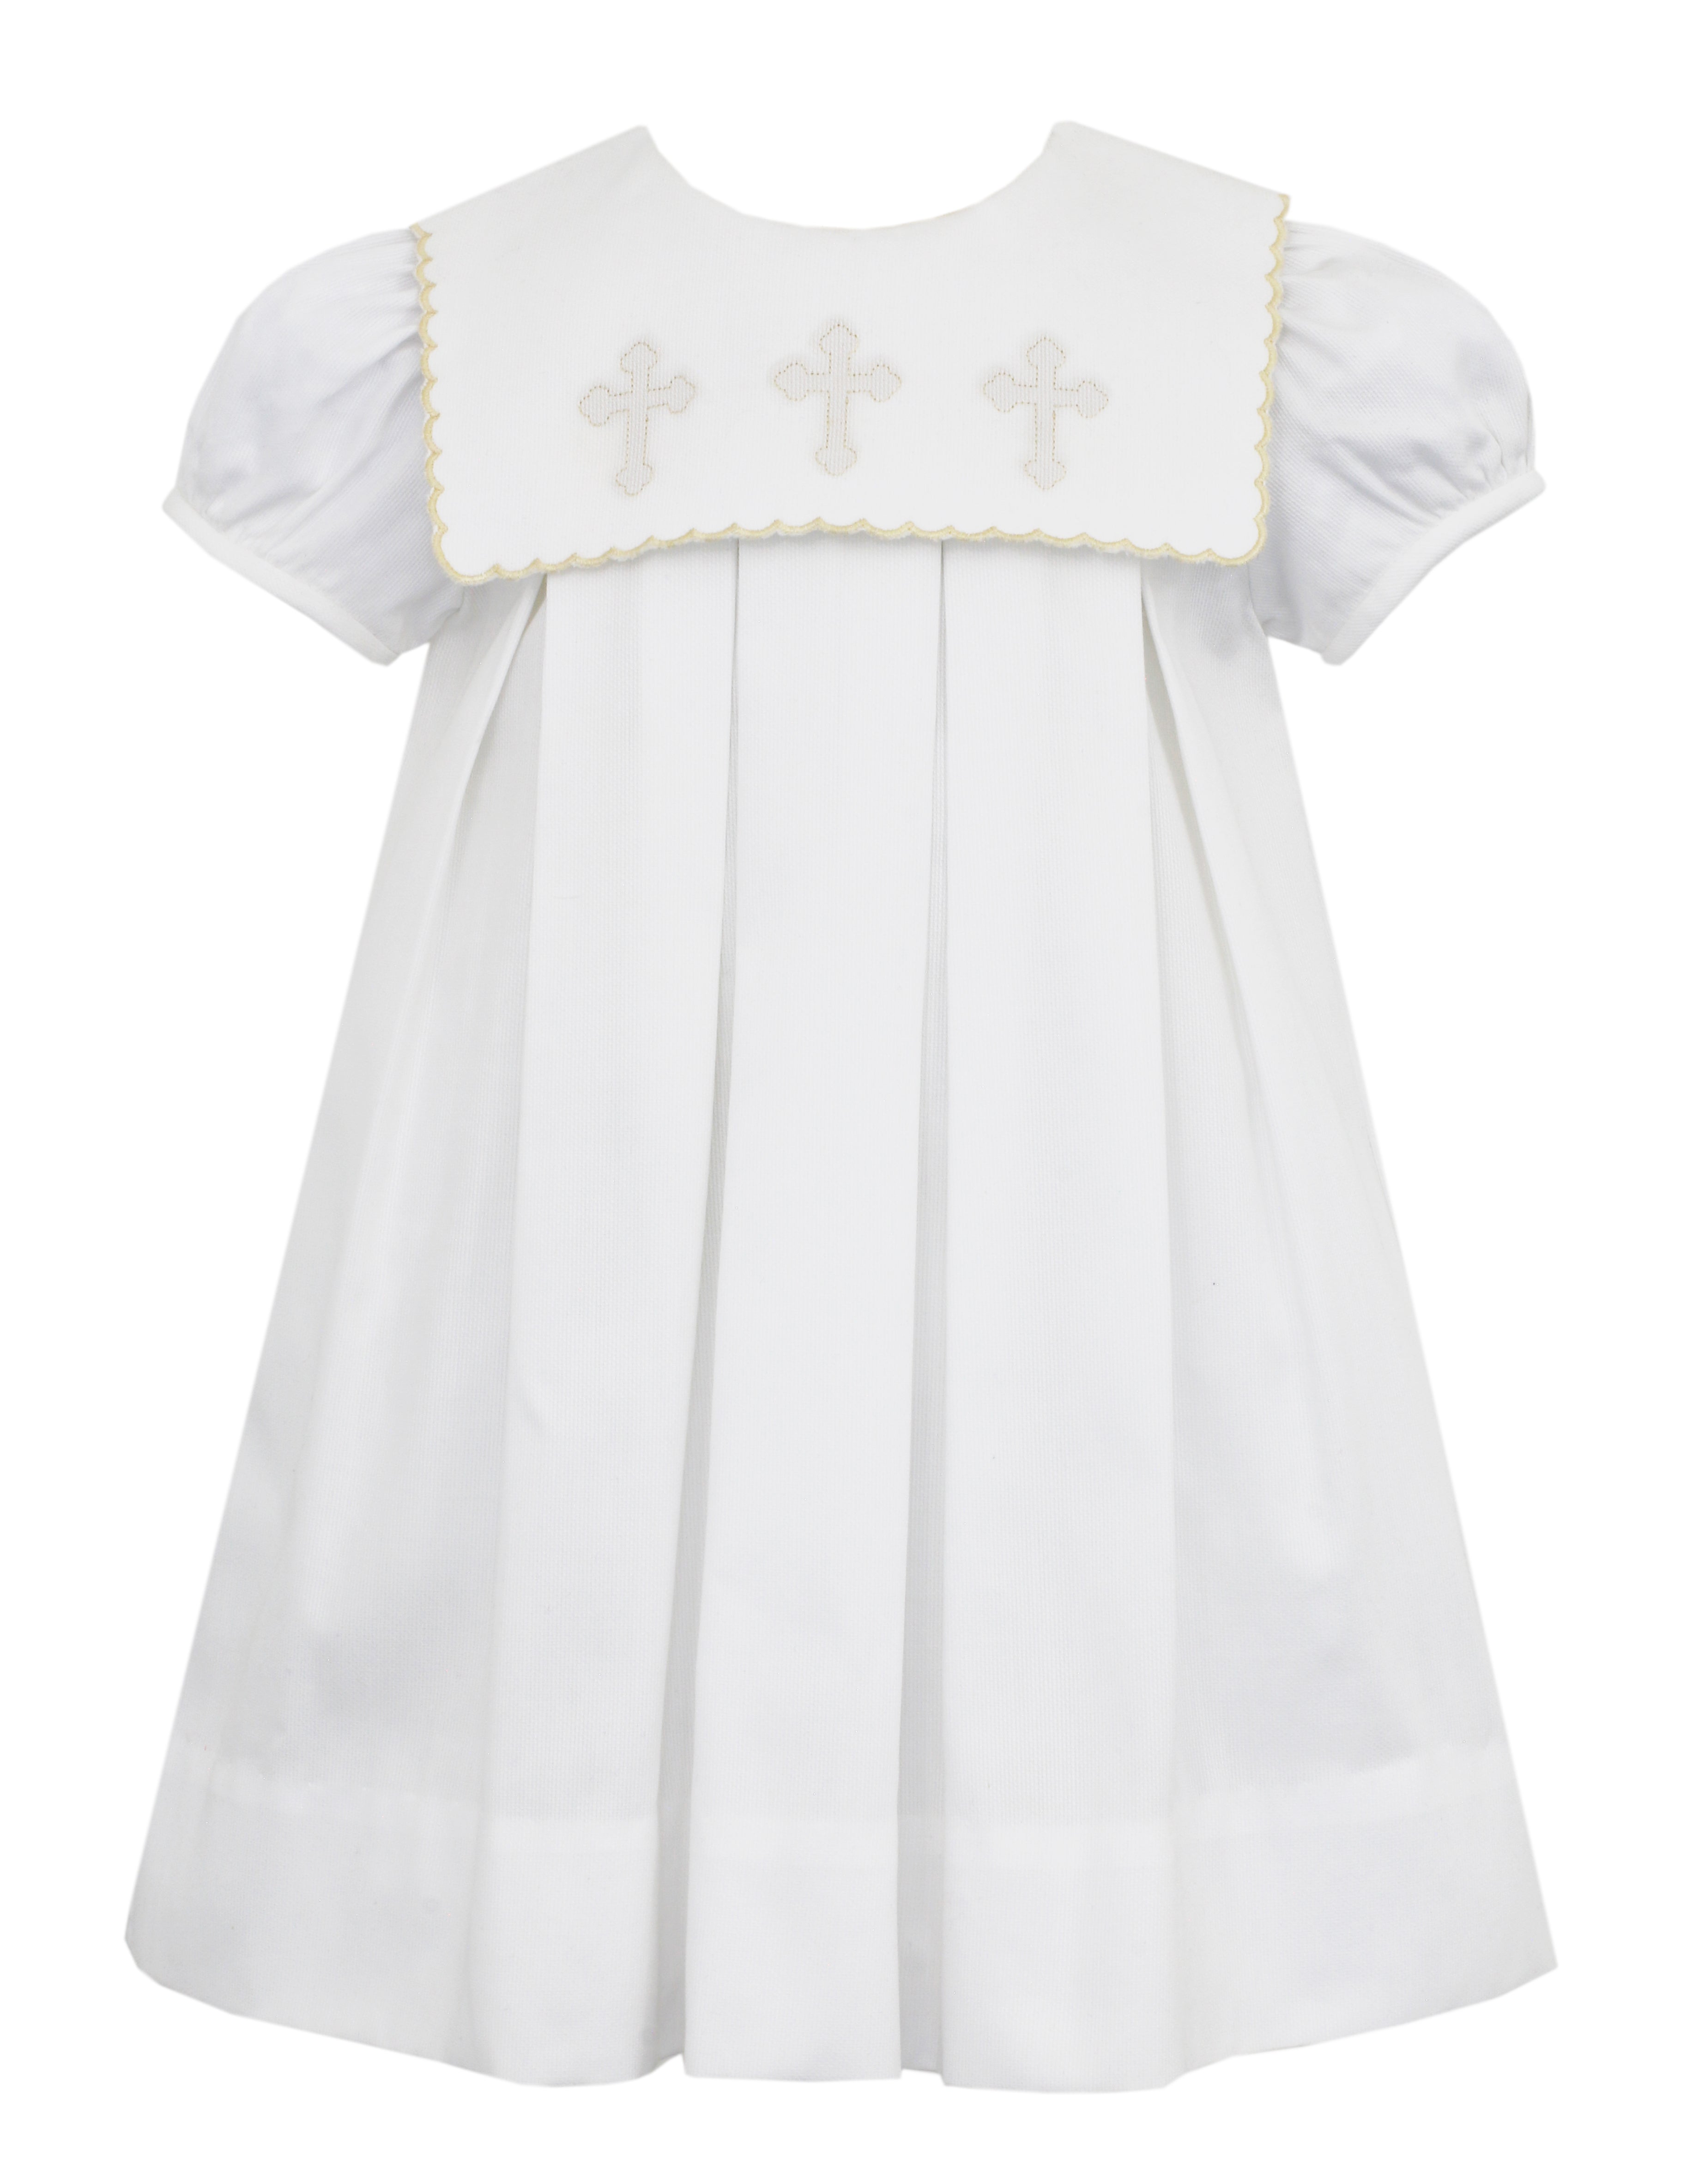 White Pique Cross Dress w Square Scalloped Collar